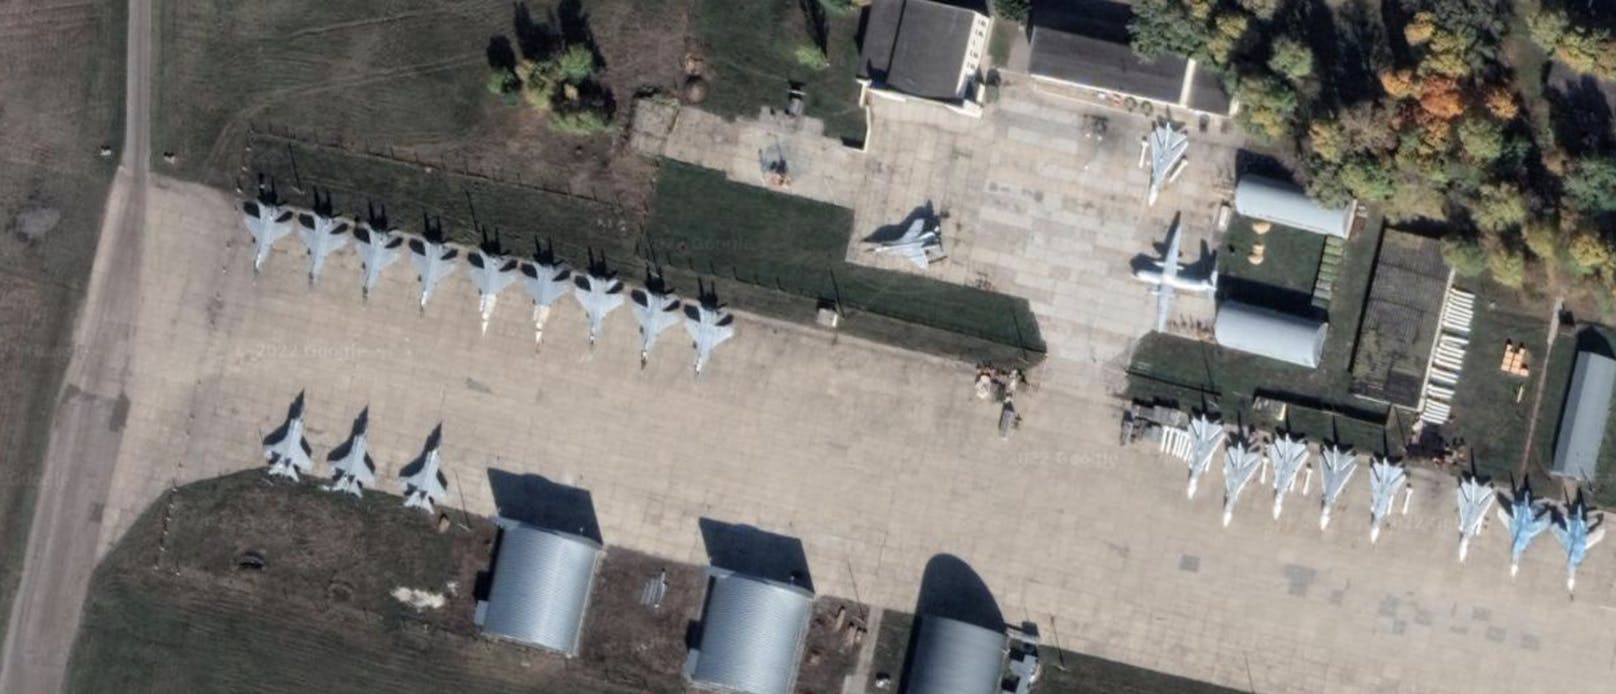 Satellitenbilder, wie dieses vom Militärflughafen in Lipetsk, haben für Furore gesorgt. Es wurde vermutet, dass Google die militärischen Anlagen in Russland erst seit kurzem unverpixelt zeigt.